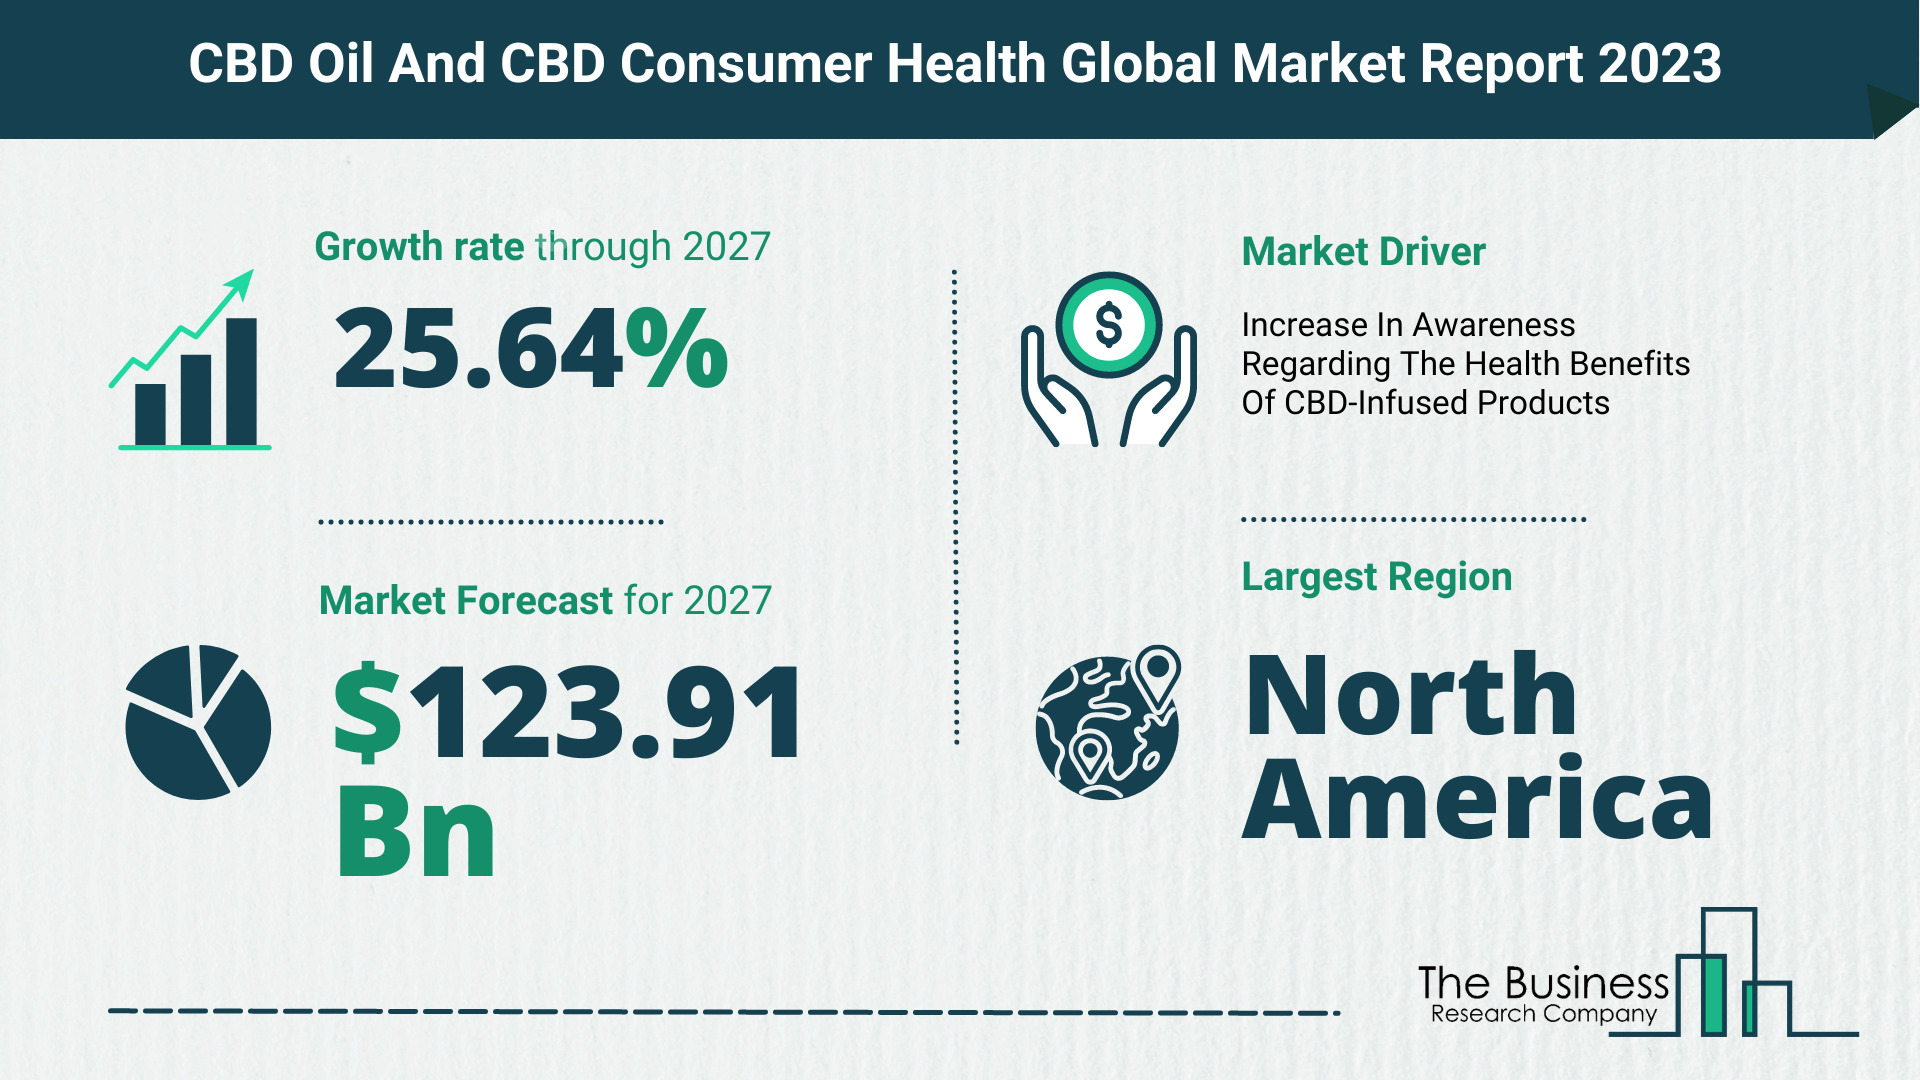 CBD oil and CBD consumer health market